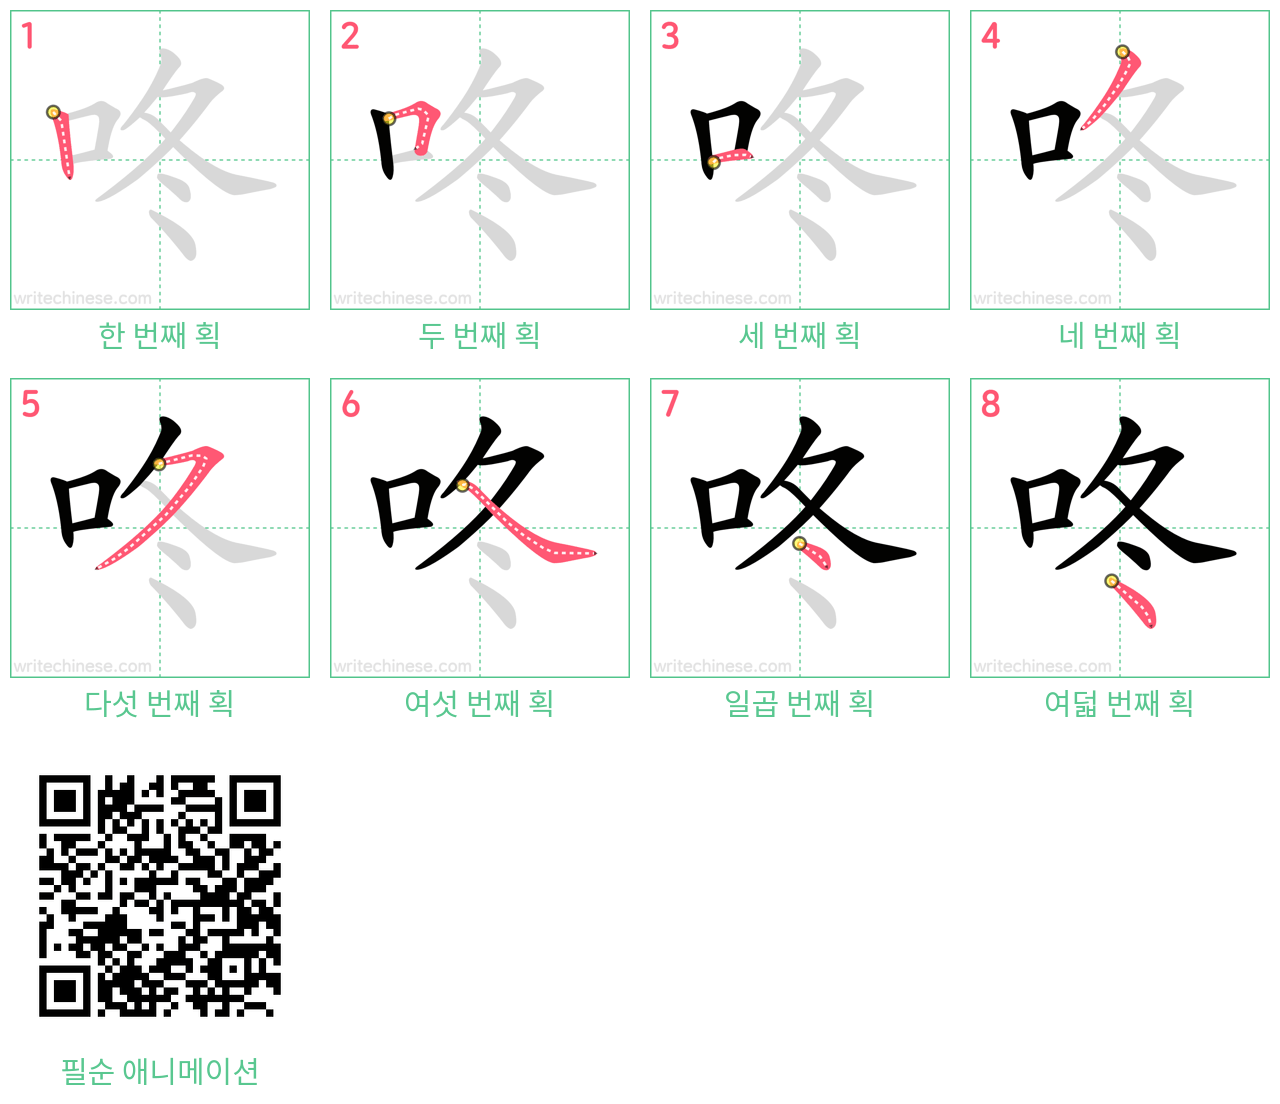 咚 step-by-step stroke order diagrams